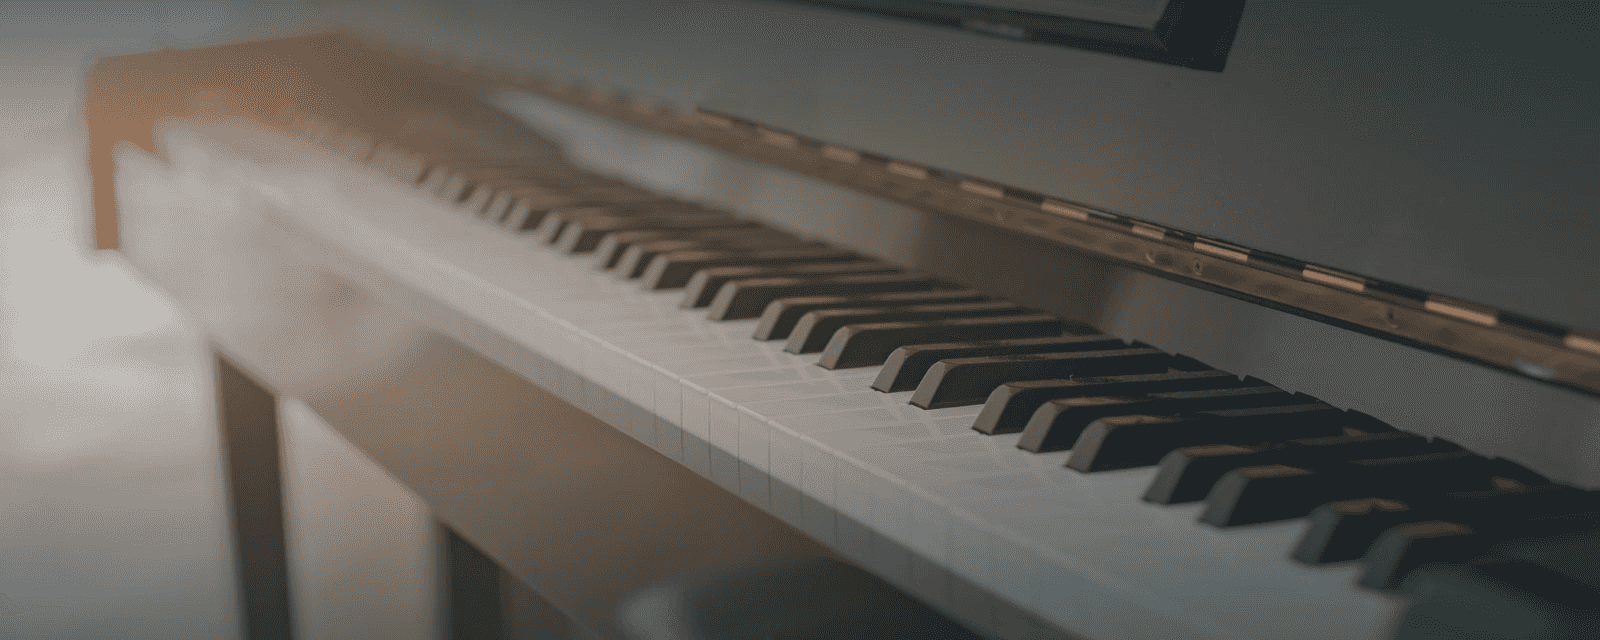 Online- Klavier- oder Digitalpianounterricht